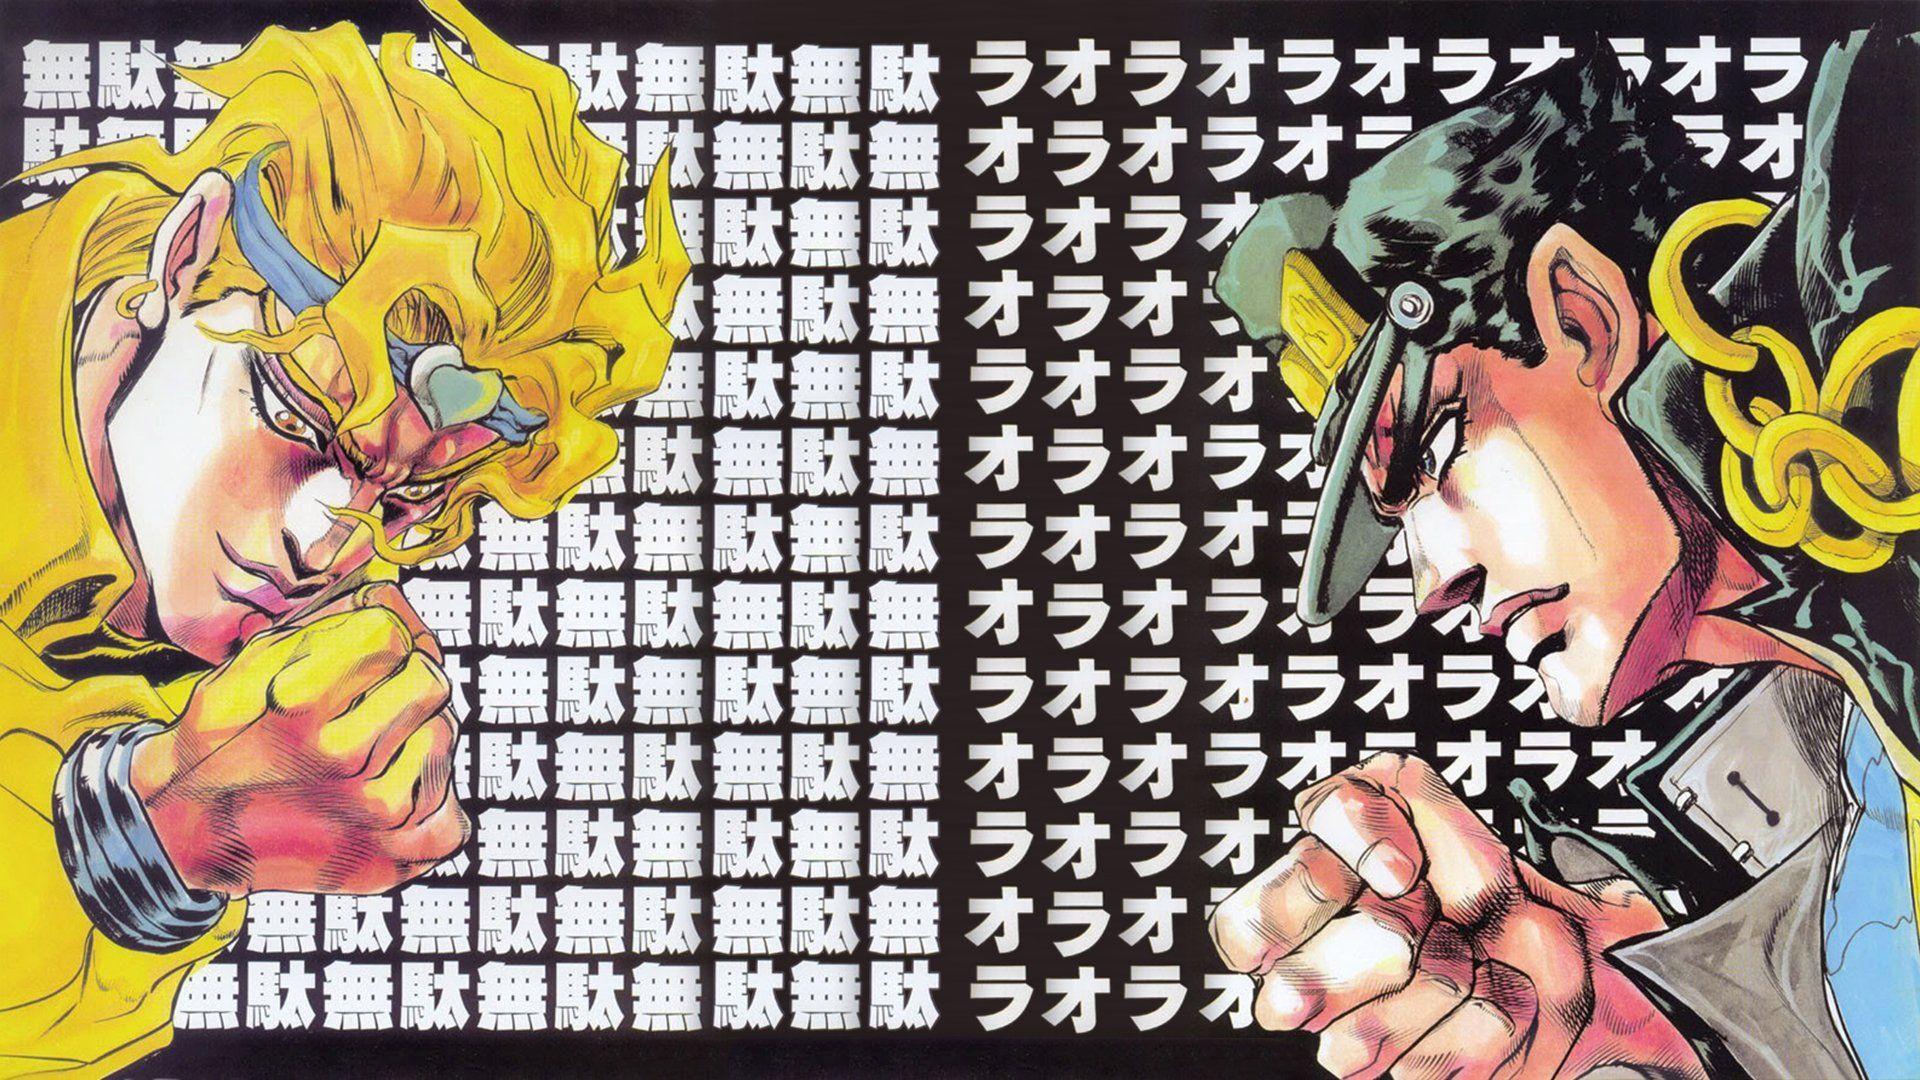 Dio Brando - JoJo no Kimyou na Bouken - Wallpaper #2560995 - Zerochan Anime  Image Board